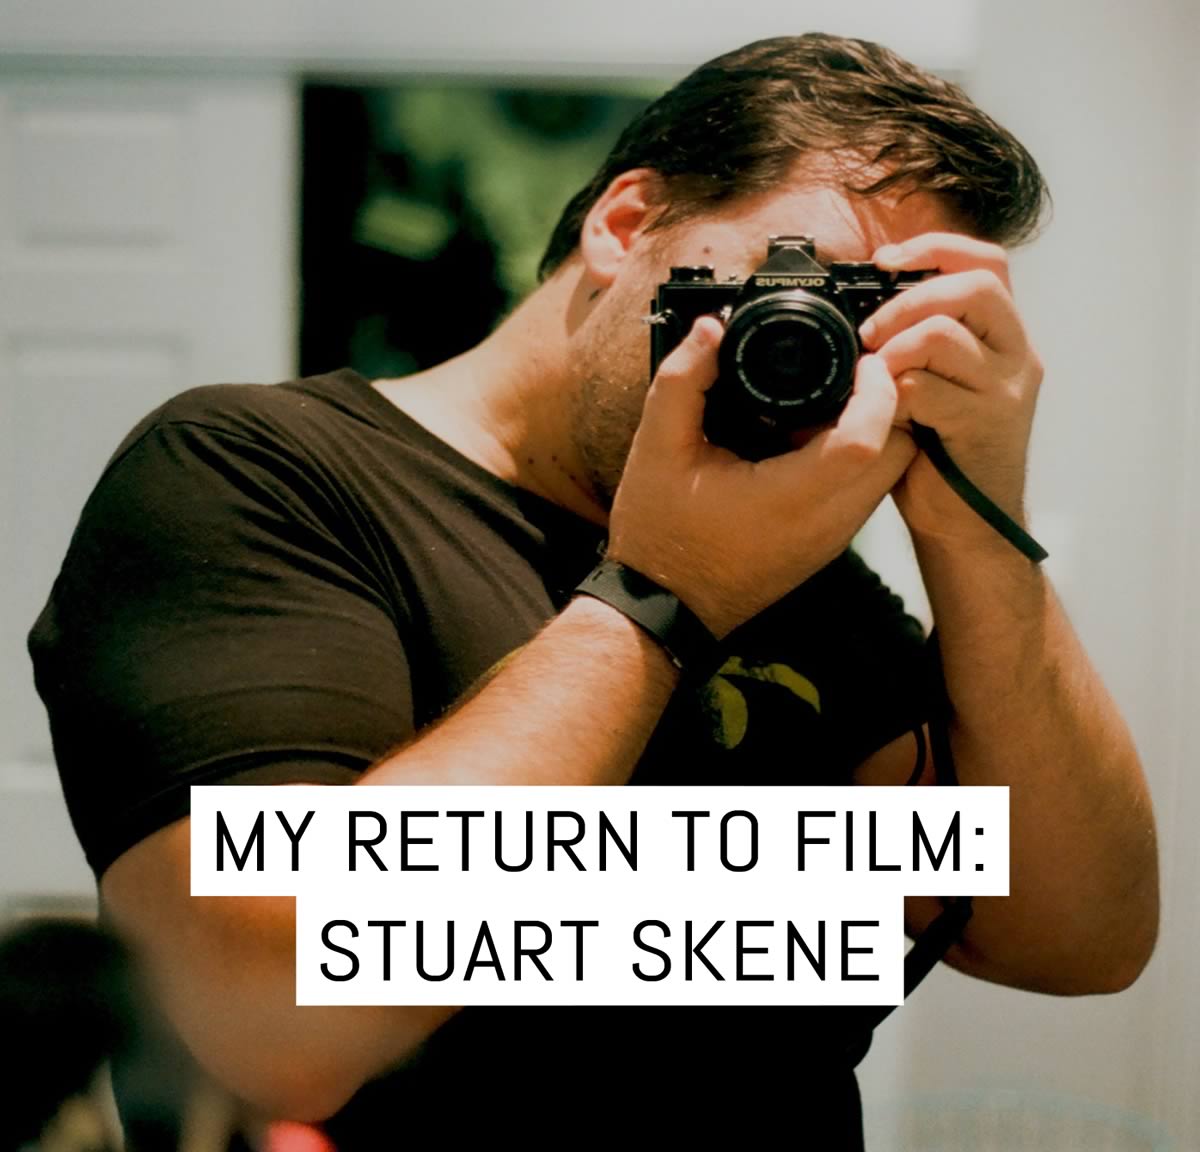 My return to film: Stuart Skene